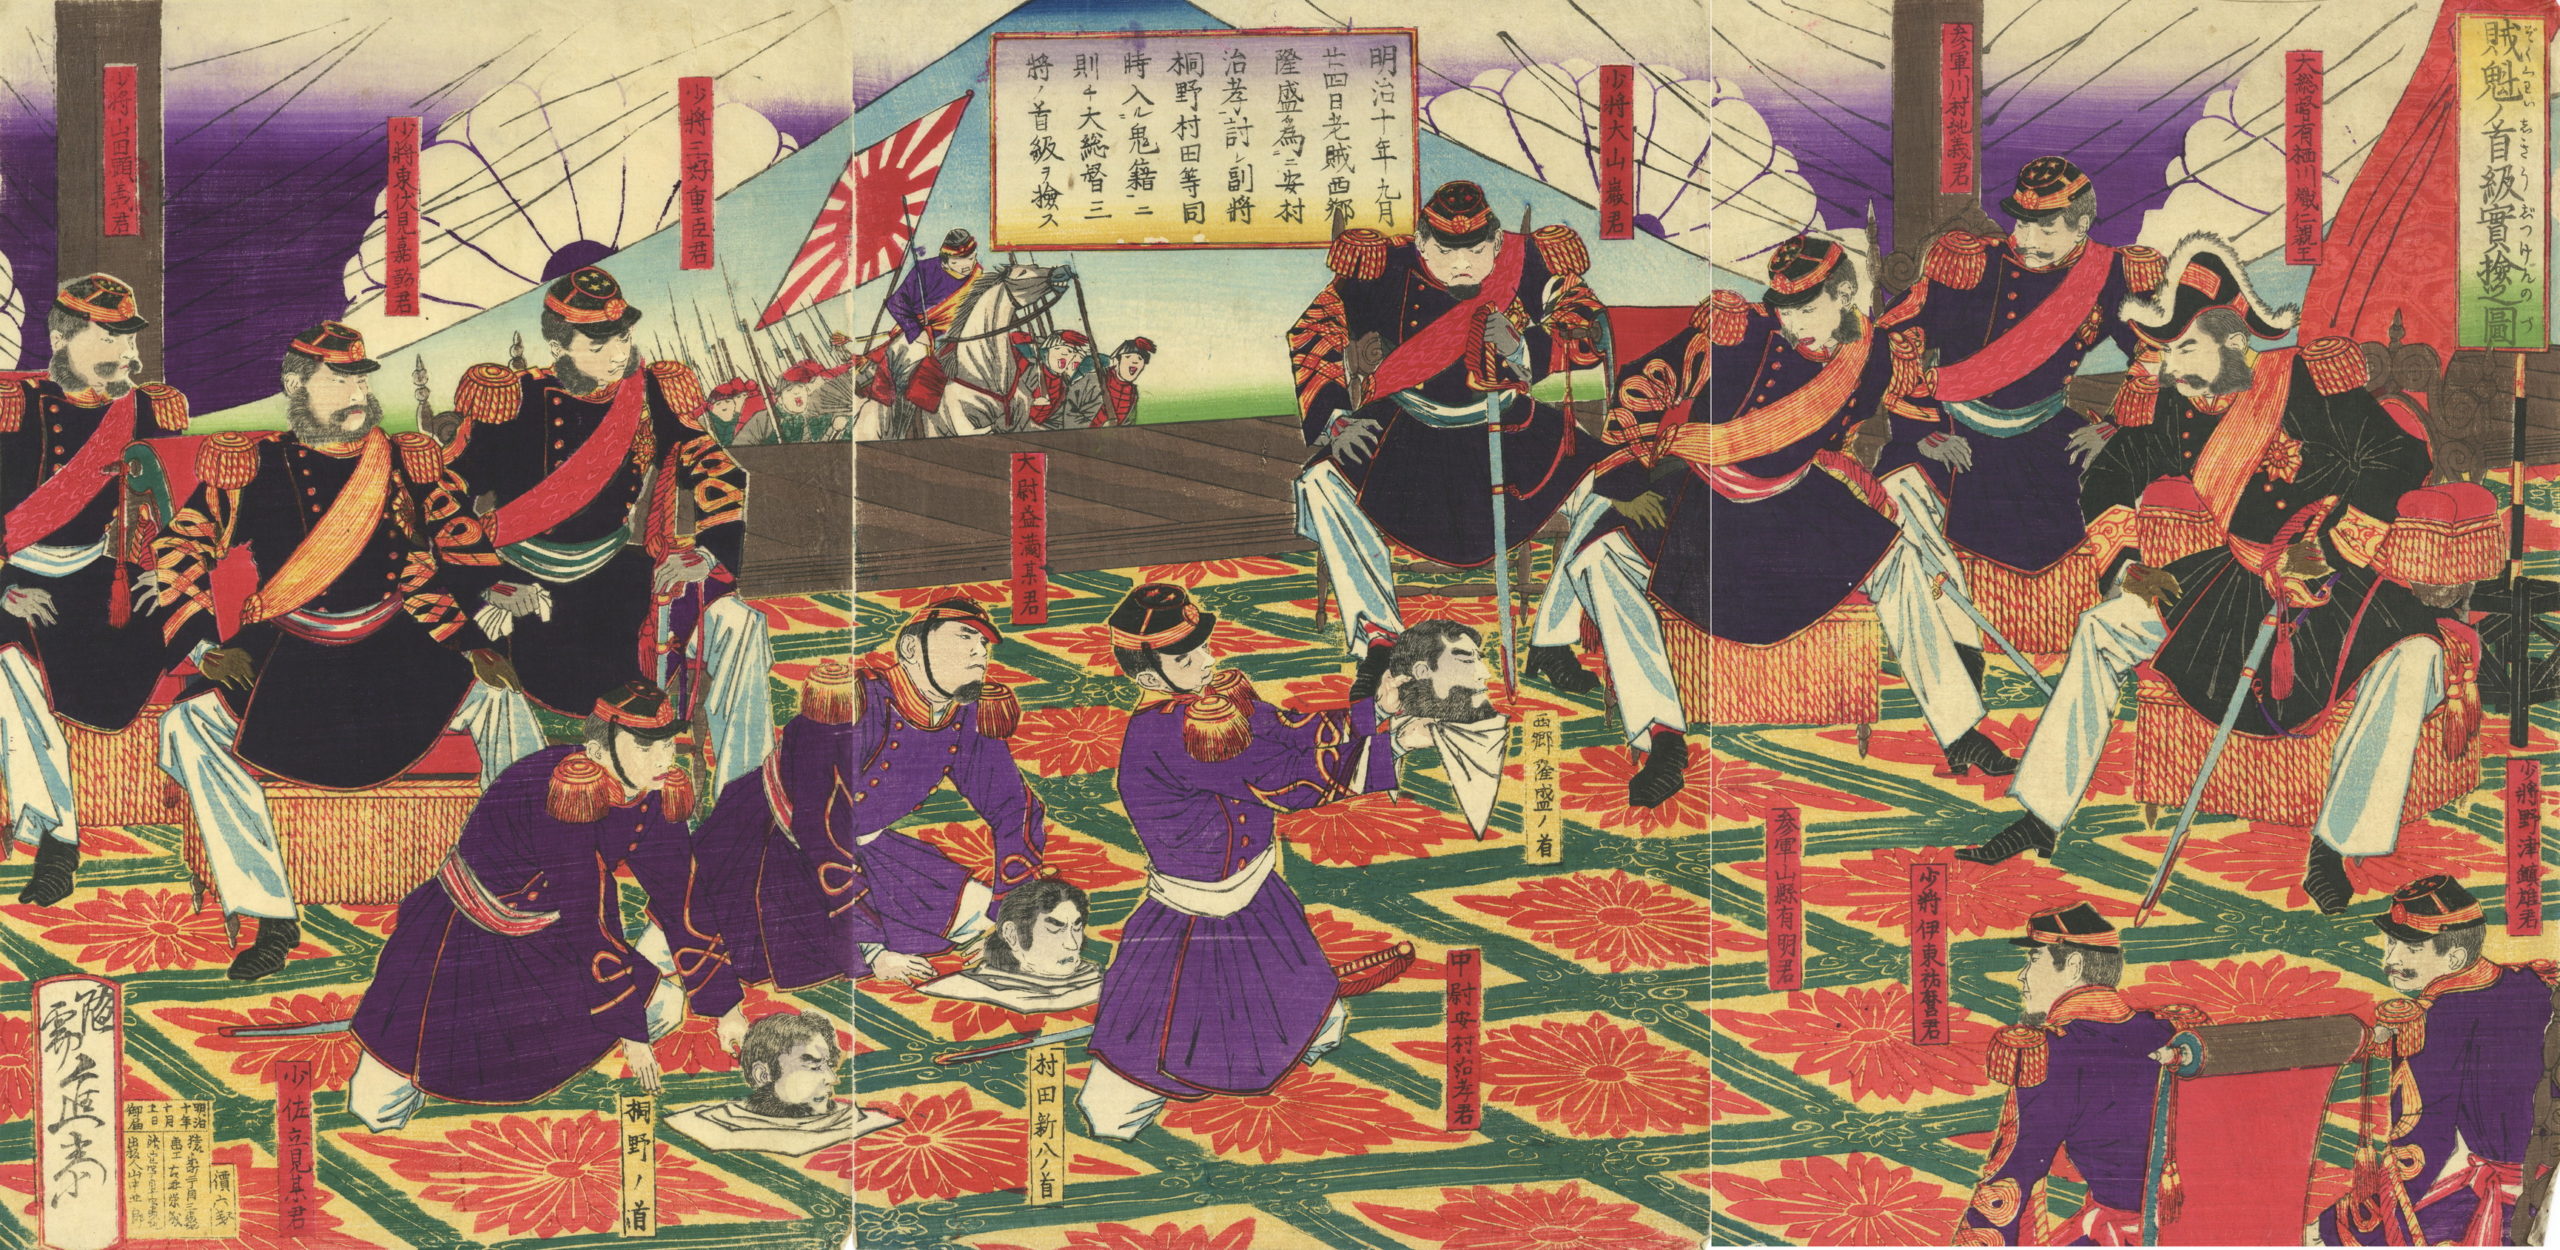 1877-10-11 進斎「賊魁ノ首級実検之図」